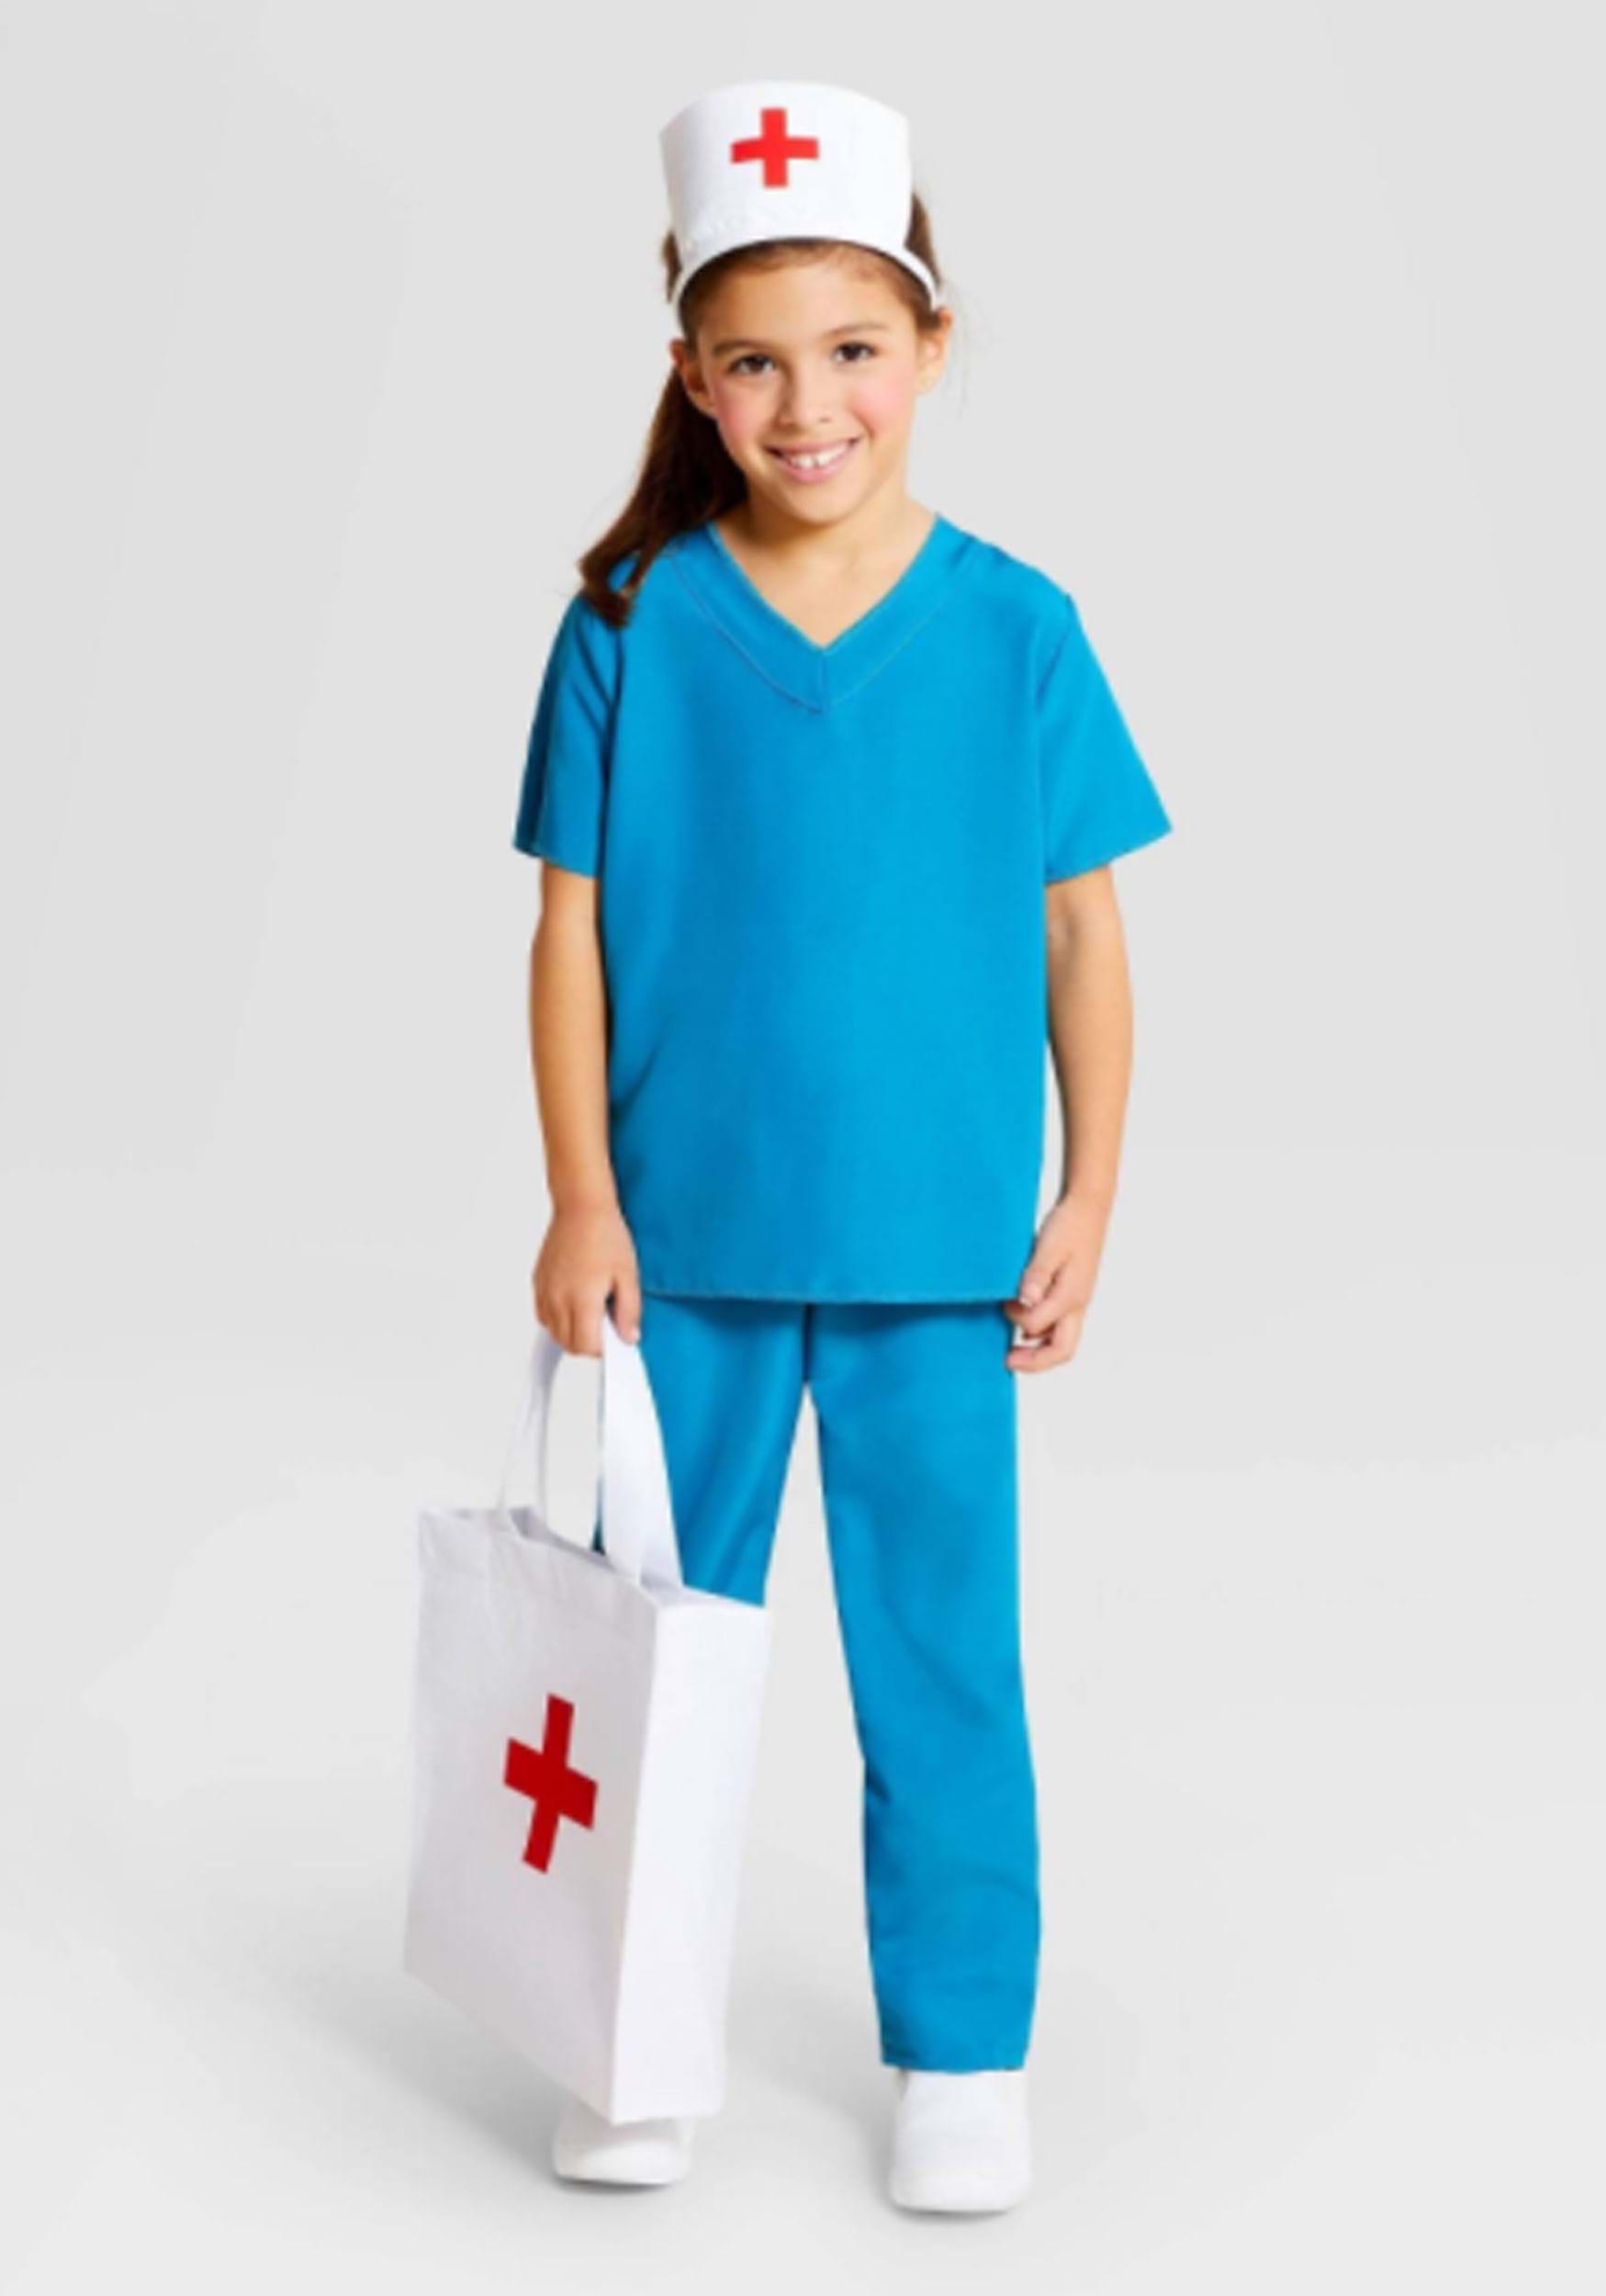 Nurse Images For Kids